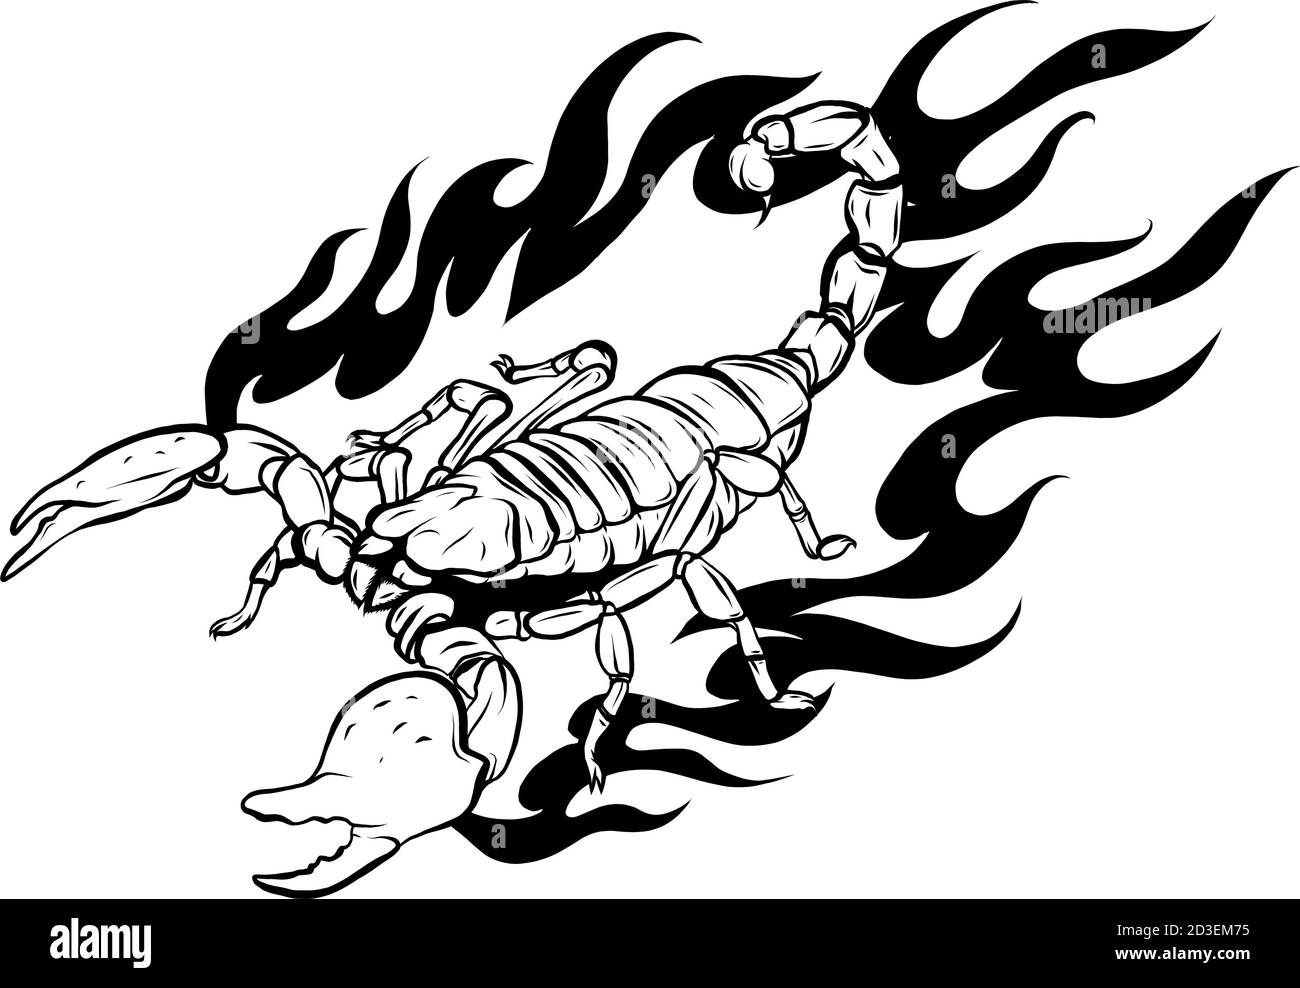 Ce scorpion avec motif d'illustration de vecteur de feu Illustration de Vecteur